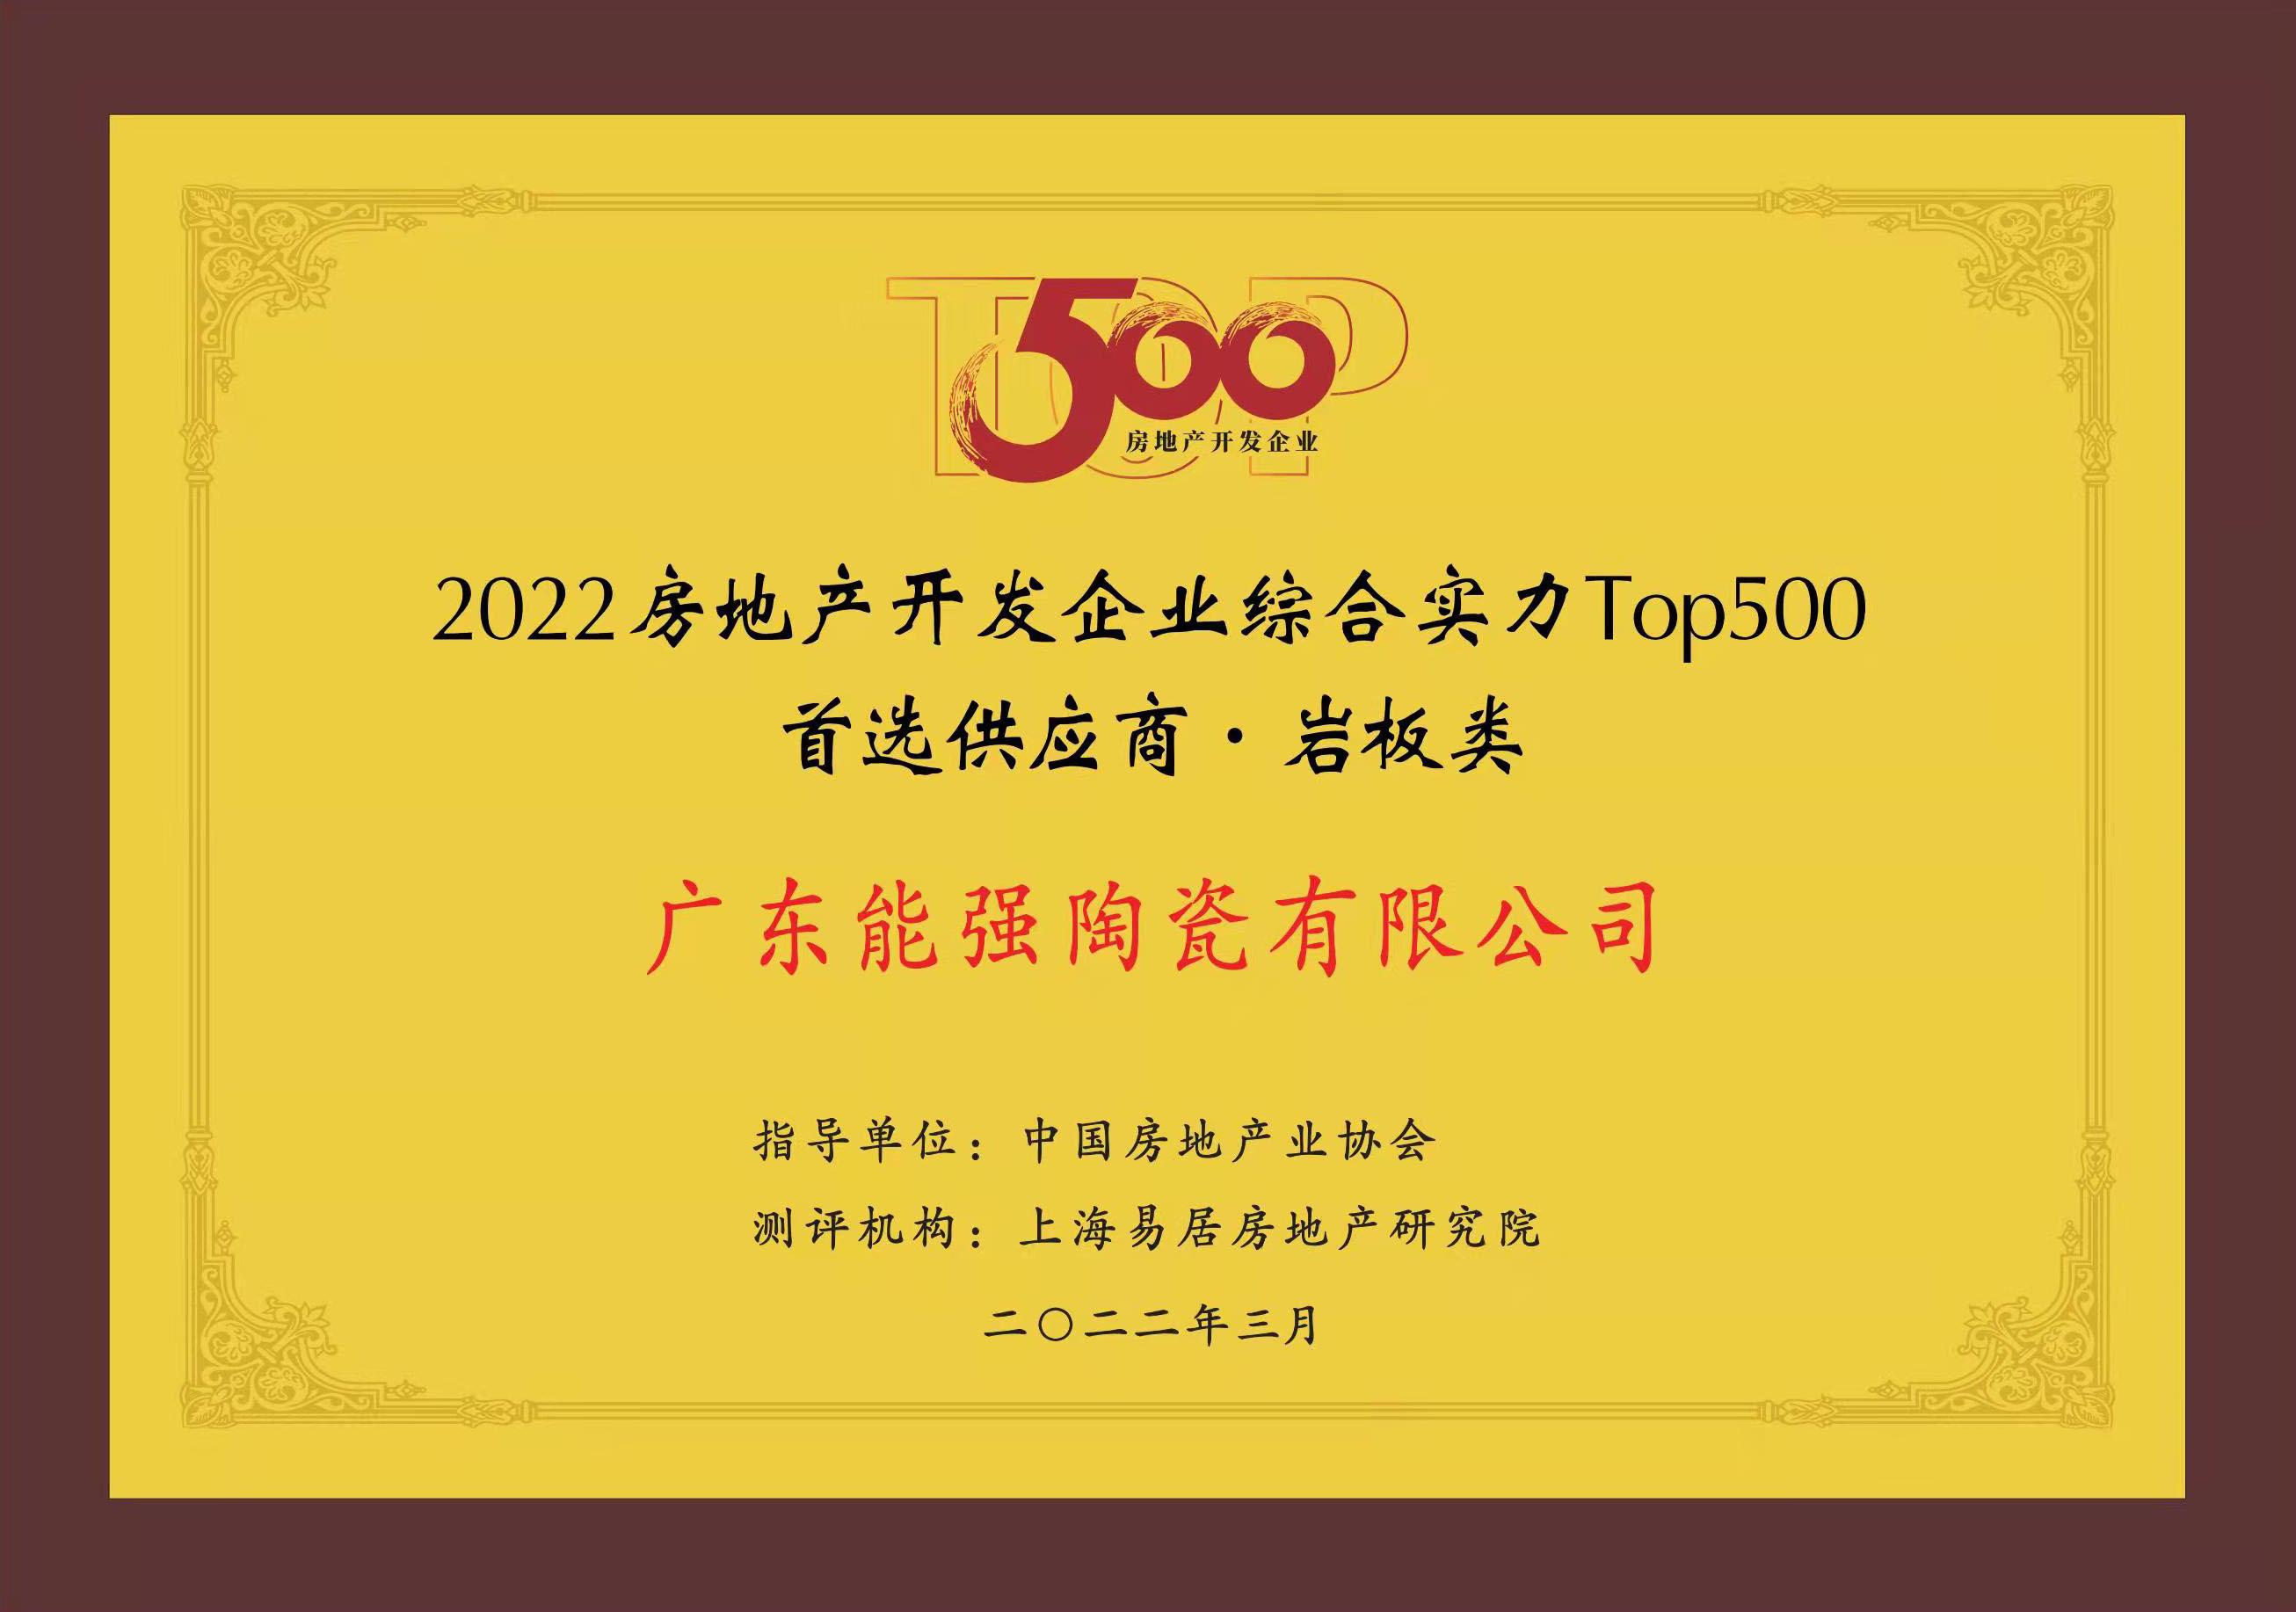 中国TOP500房地产开发企业首选供应商·岩板类